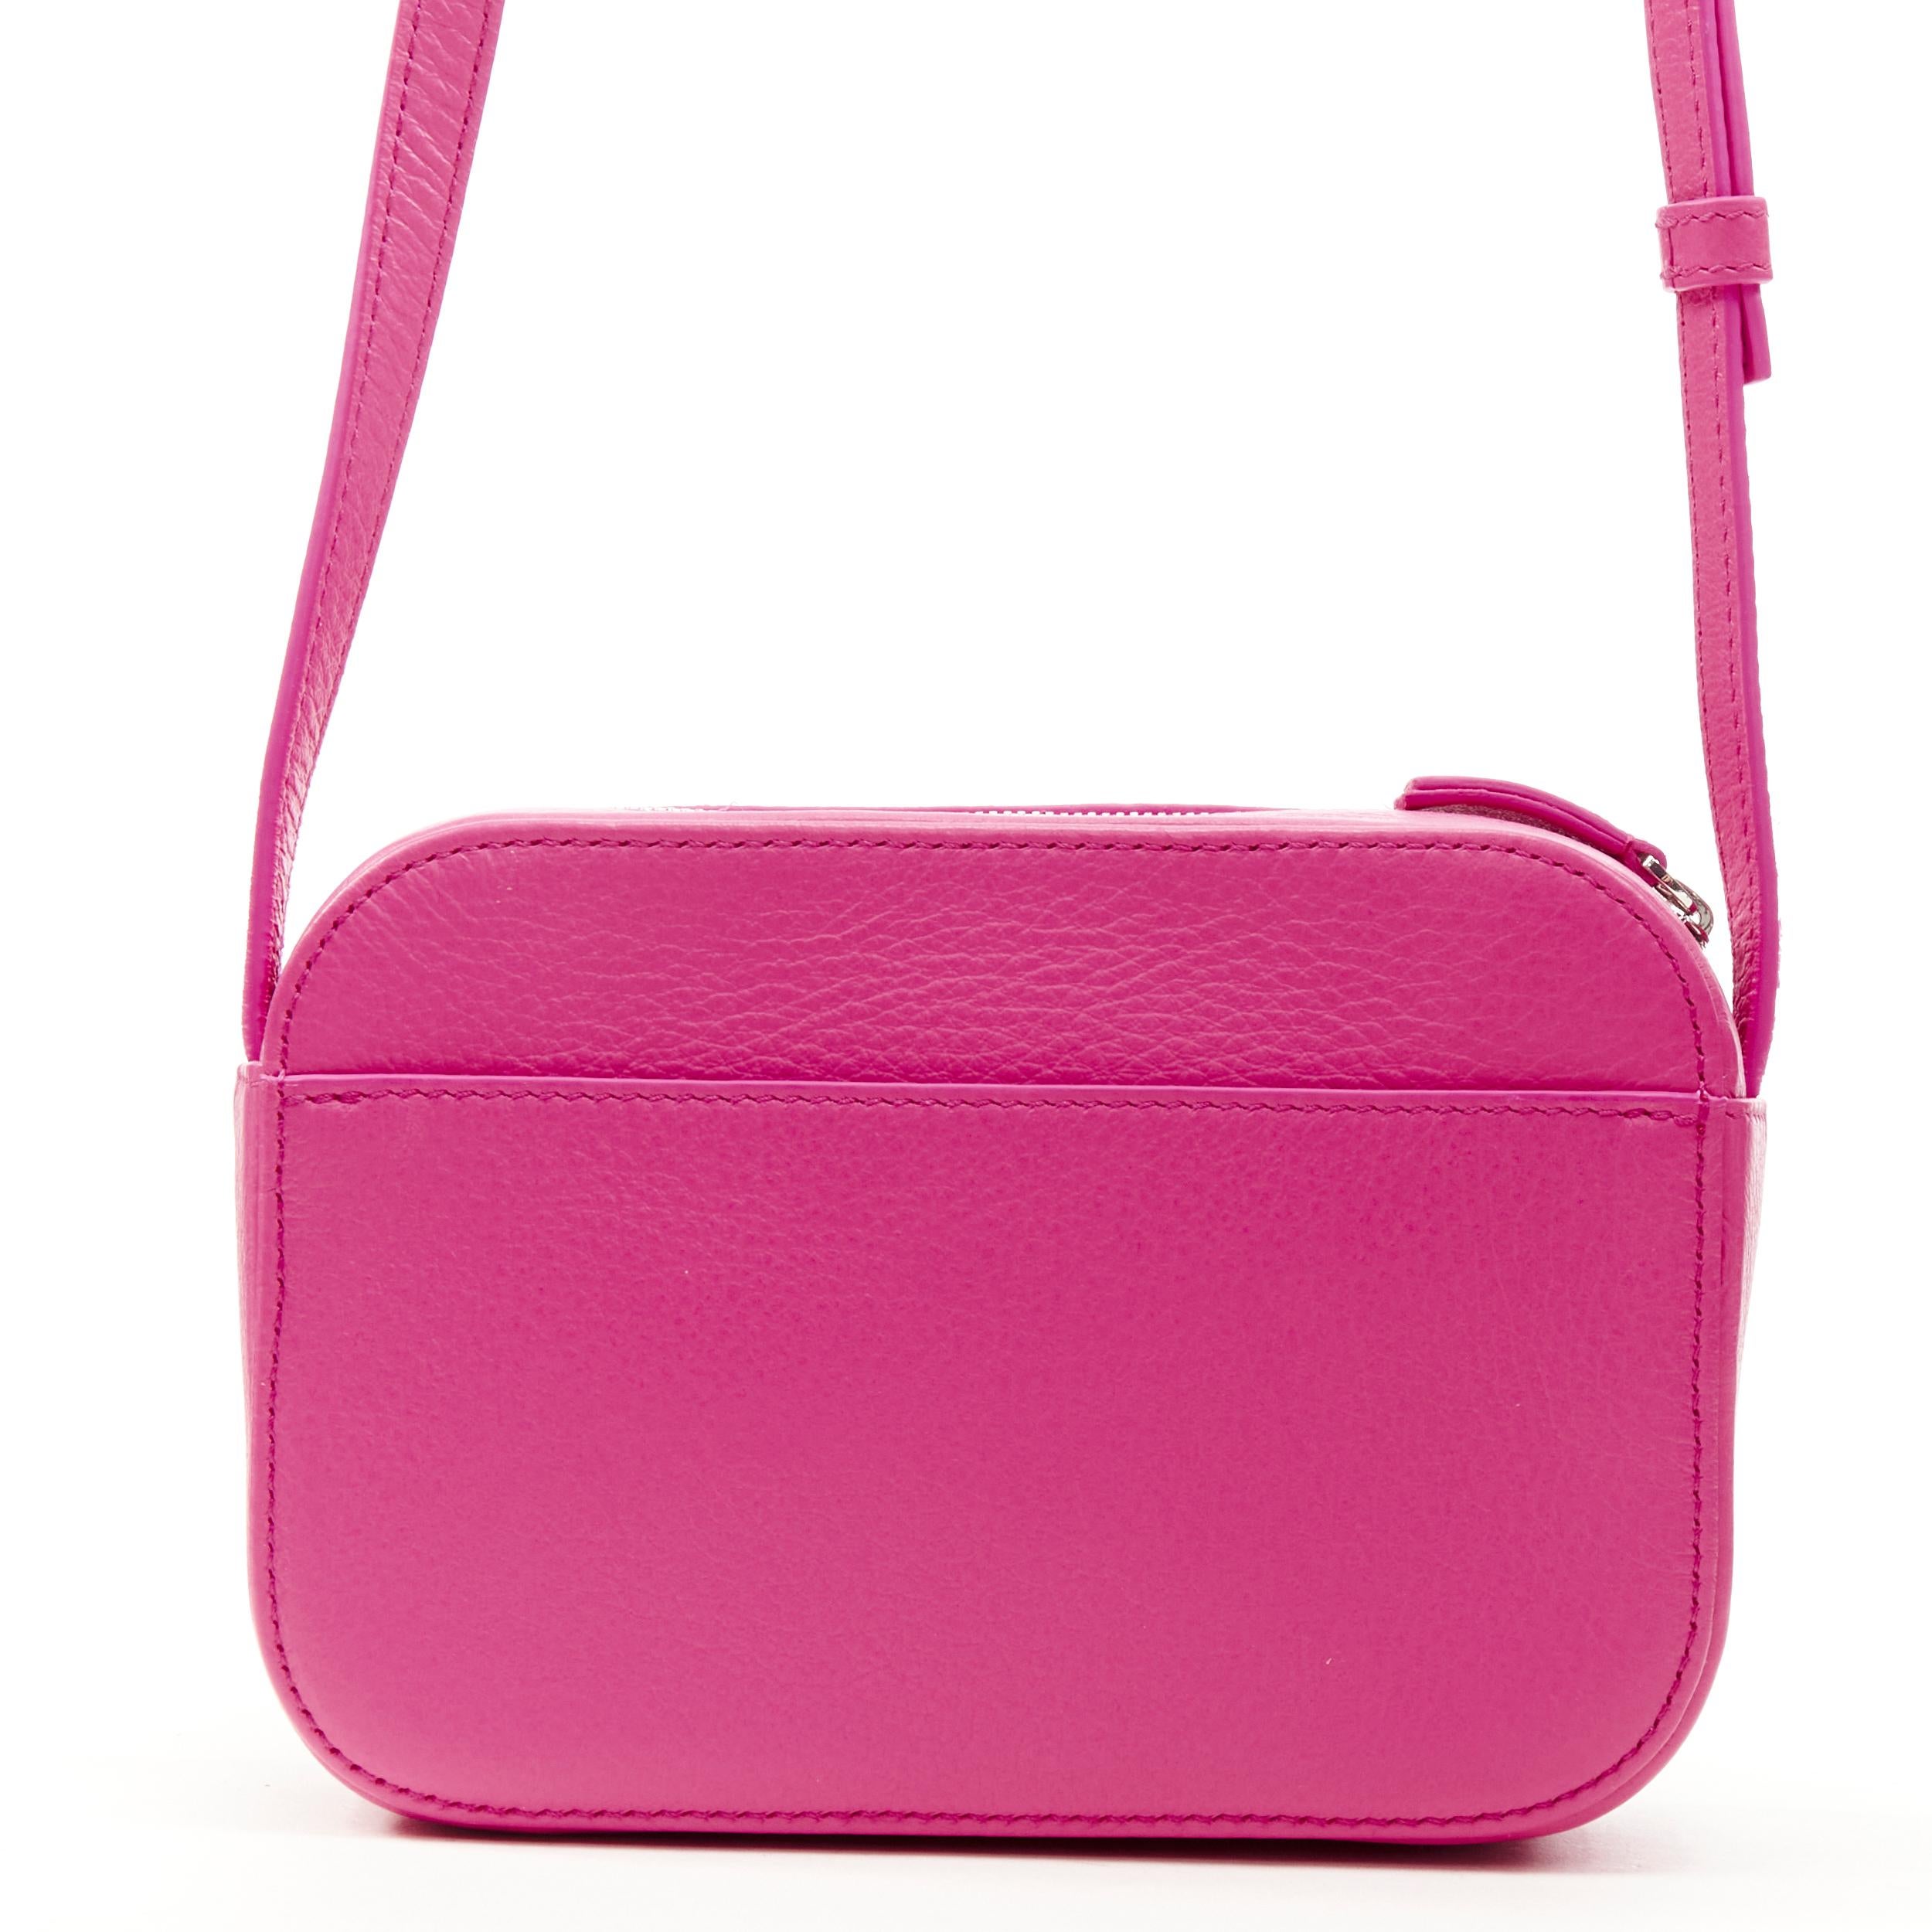 pink balenciaga purse